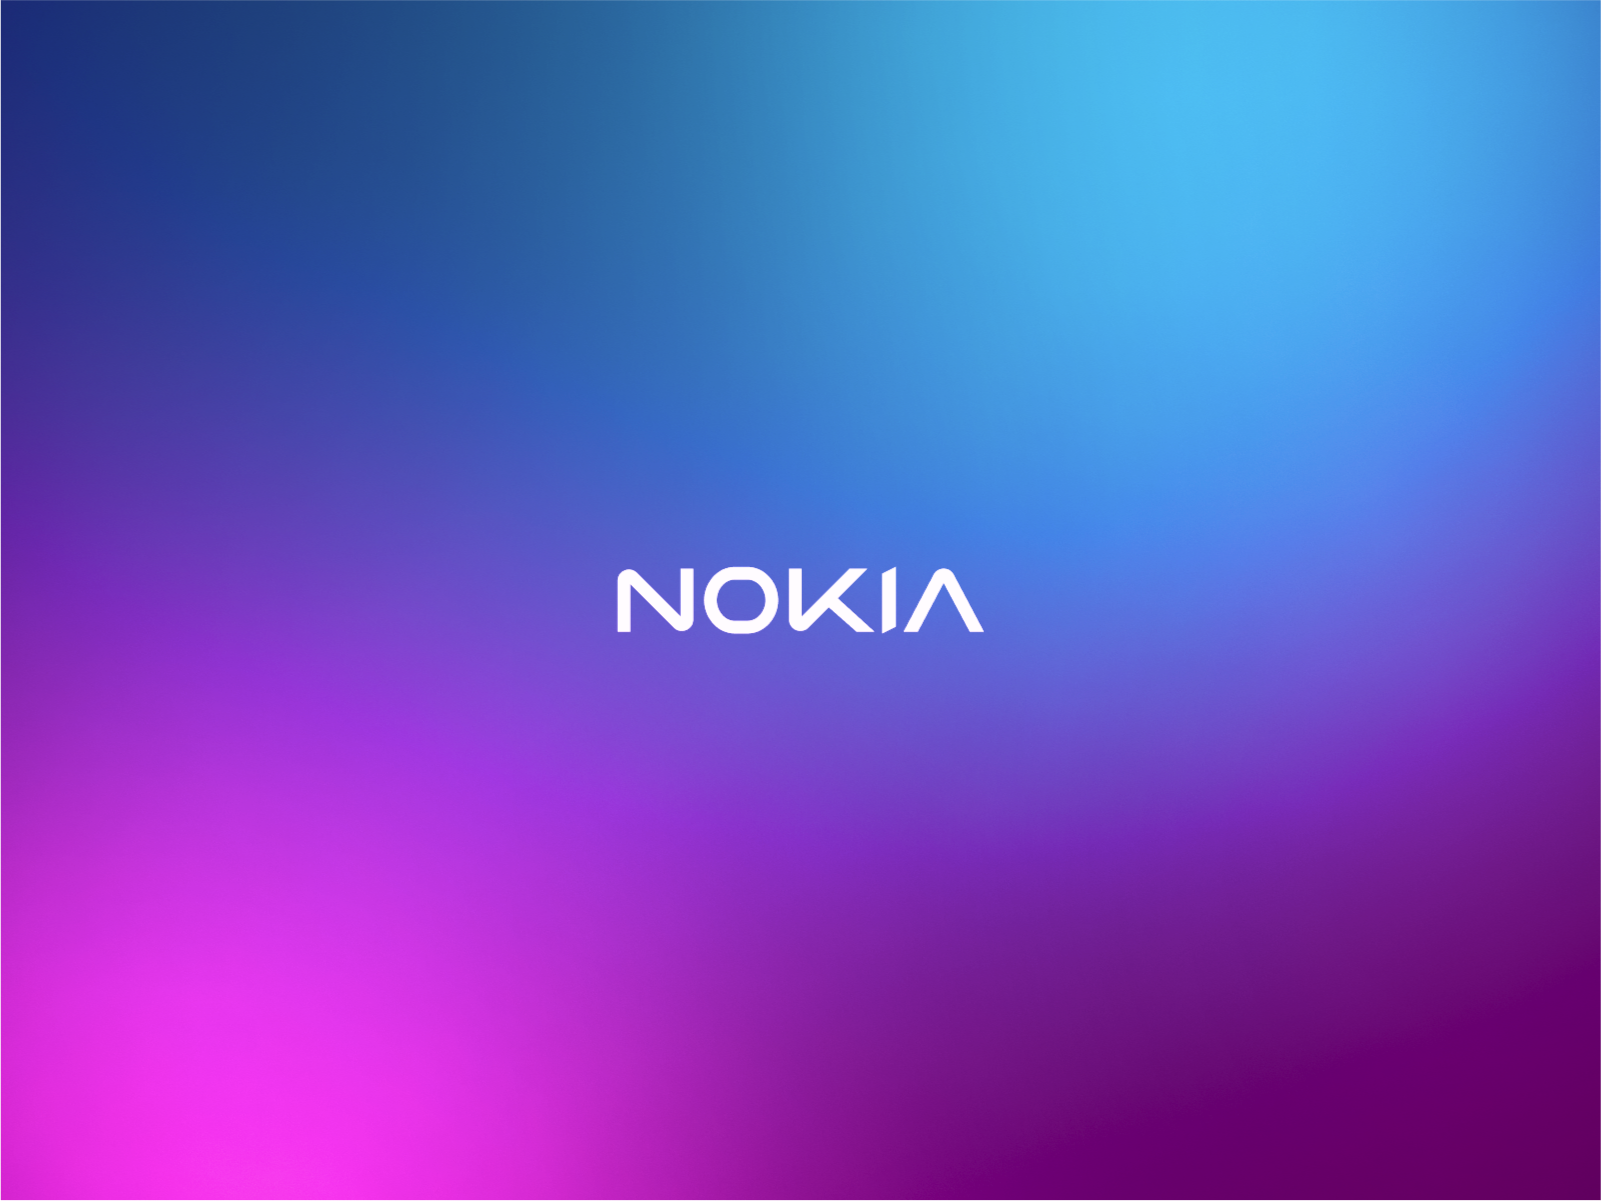 Thêm một huyền thoại Nokia chuẩn bị được hồi sinh | VTV.VN